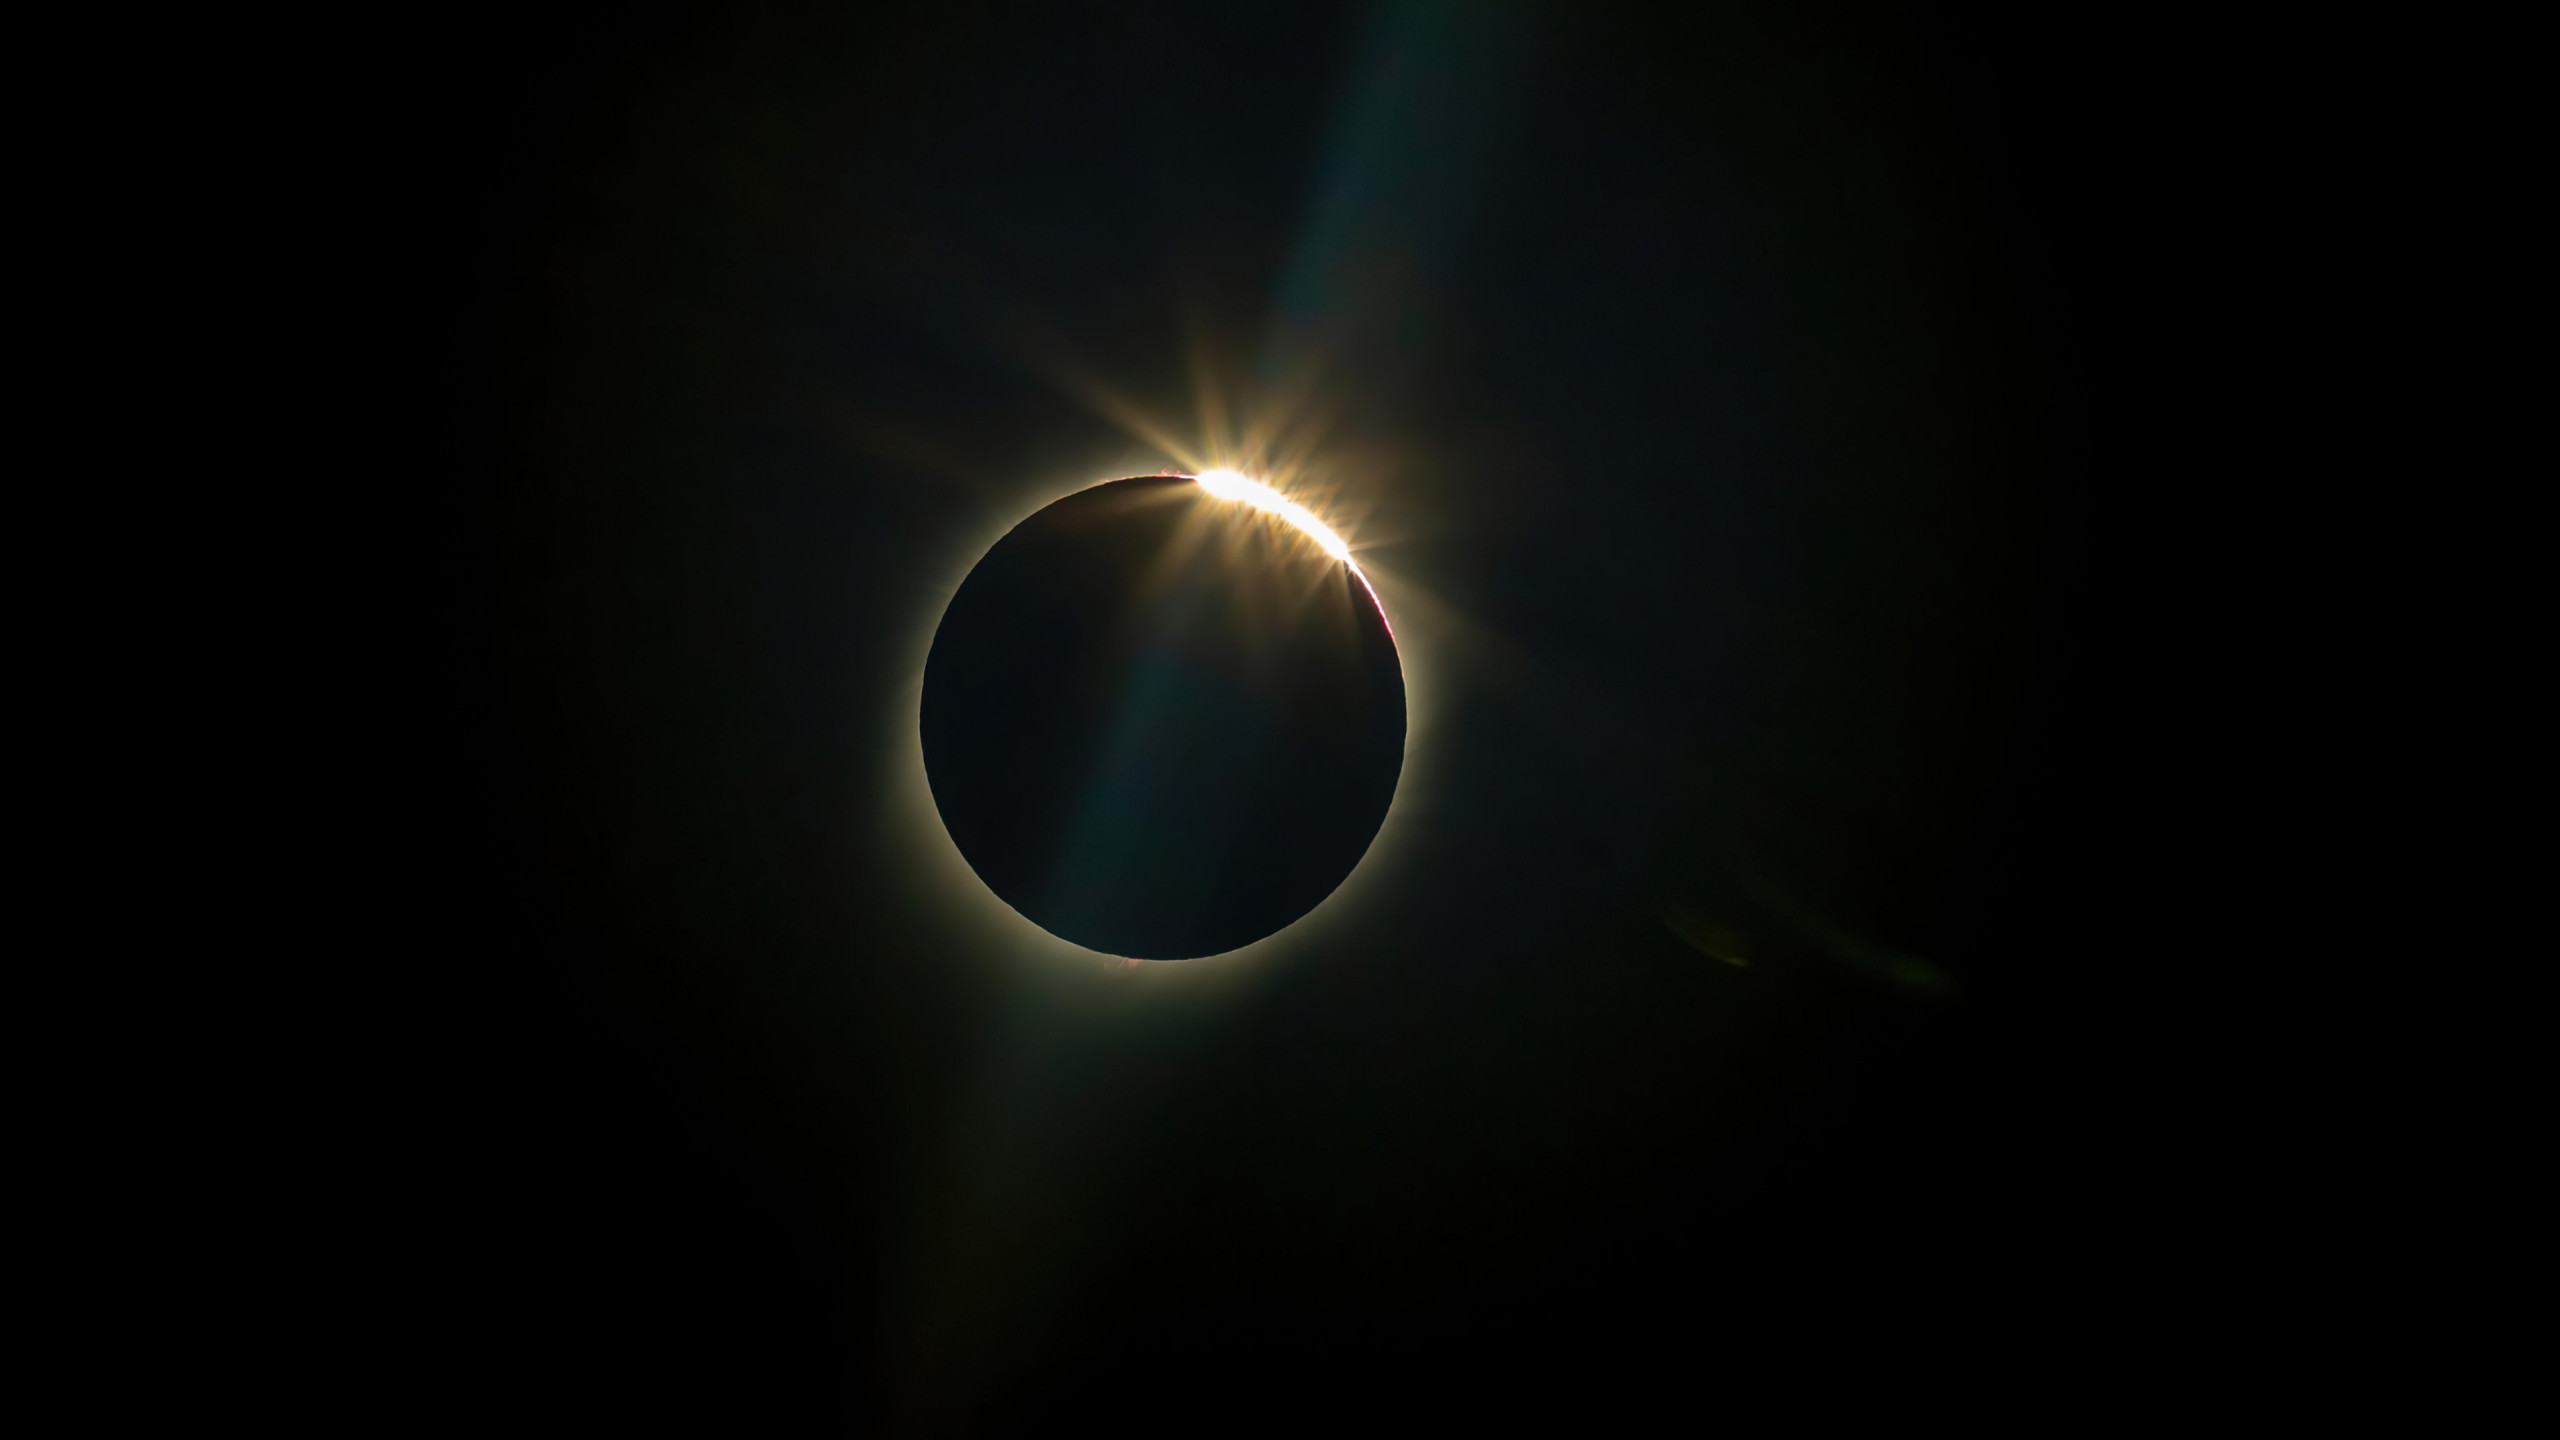 Sun eclipse wallpaper 2560x1440